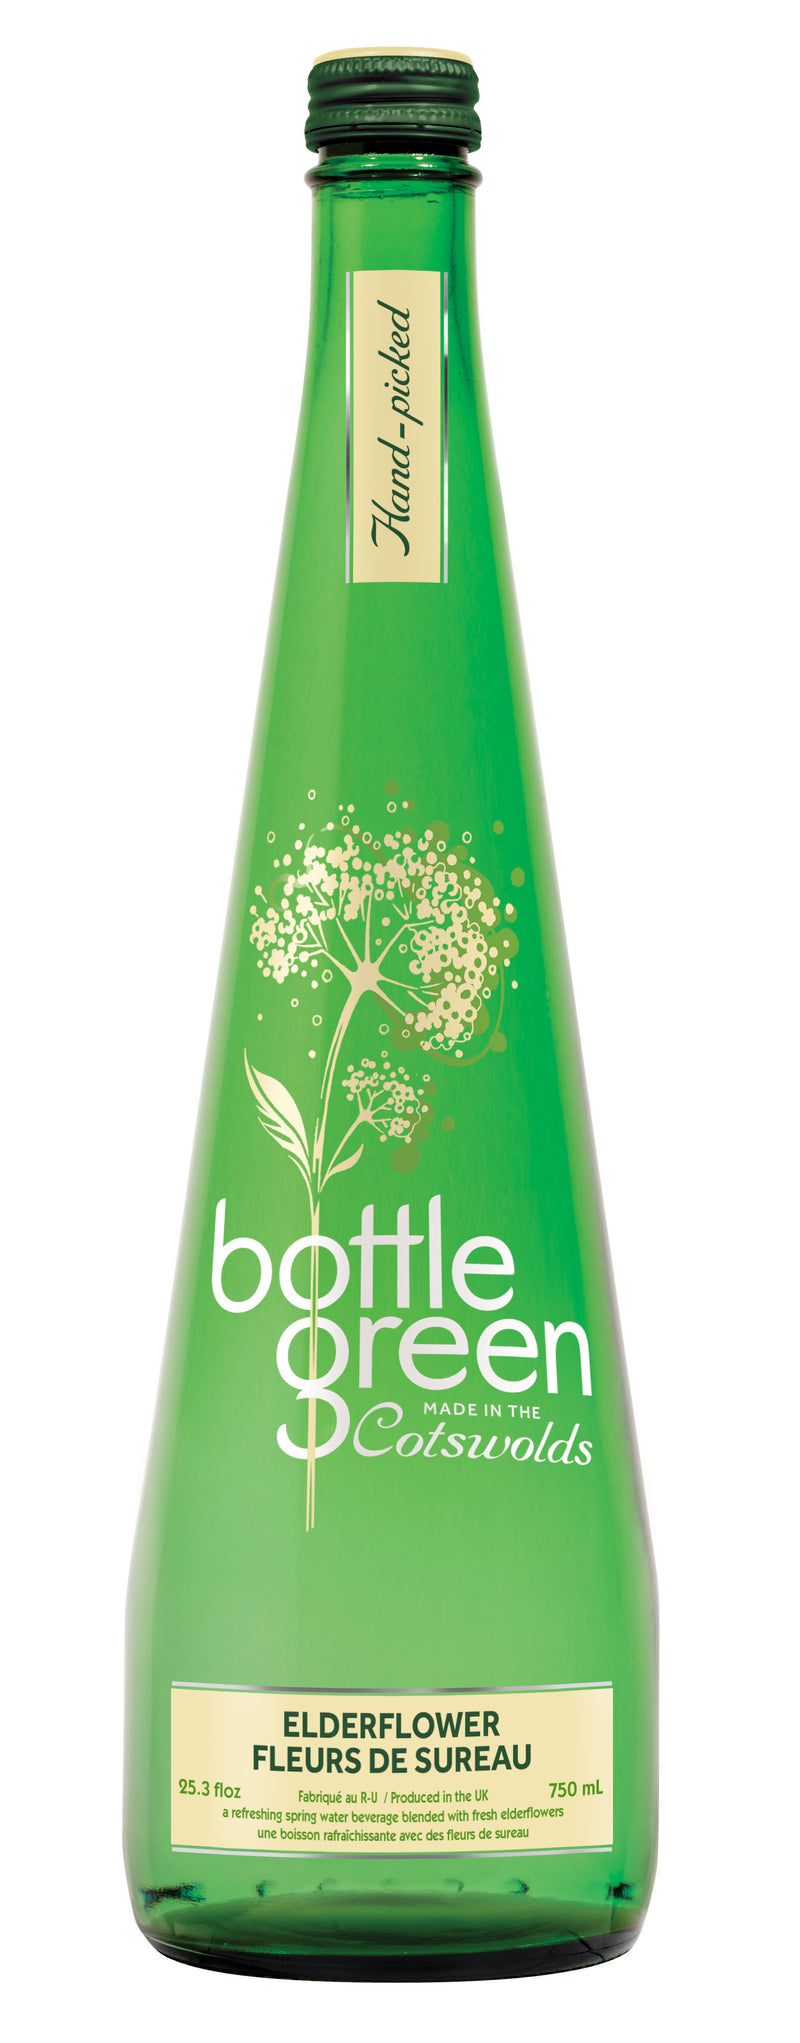 Bottle Green Presse - Elderflower - 750 ml